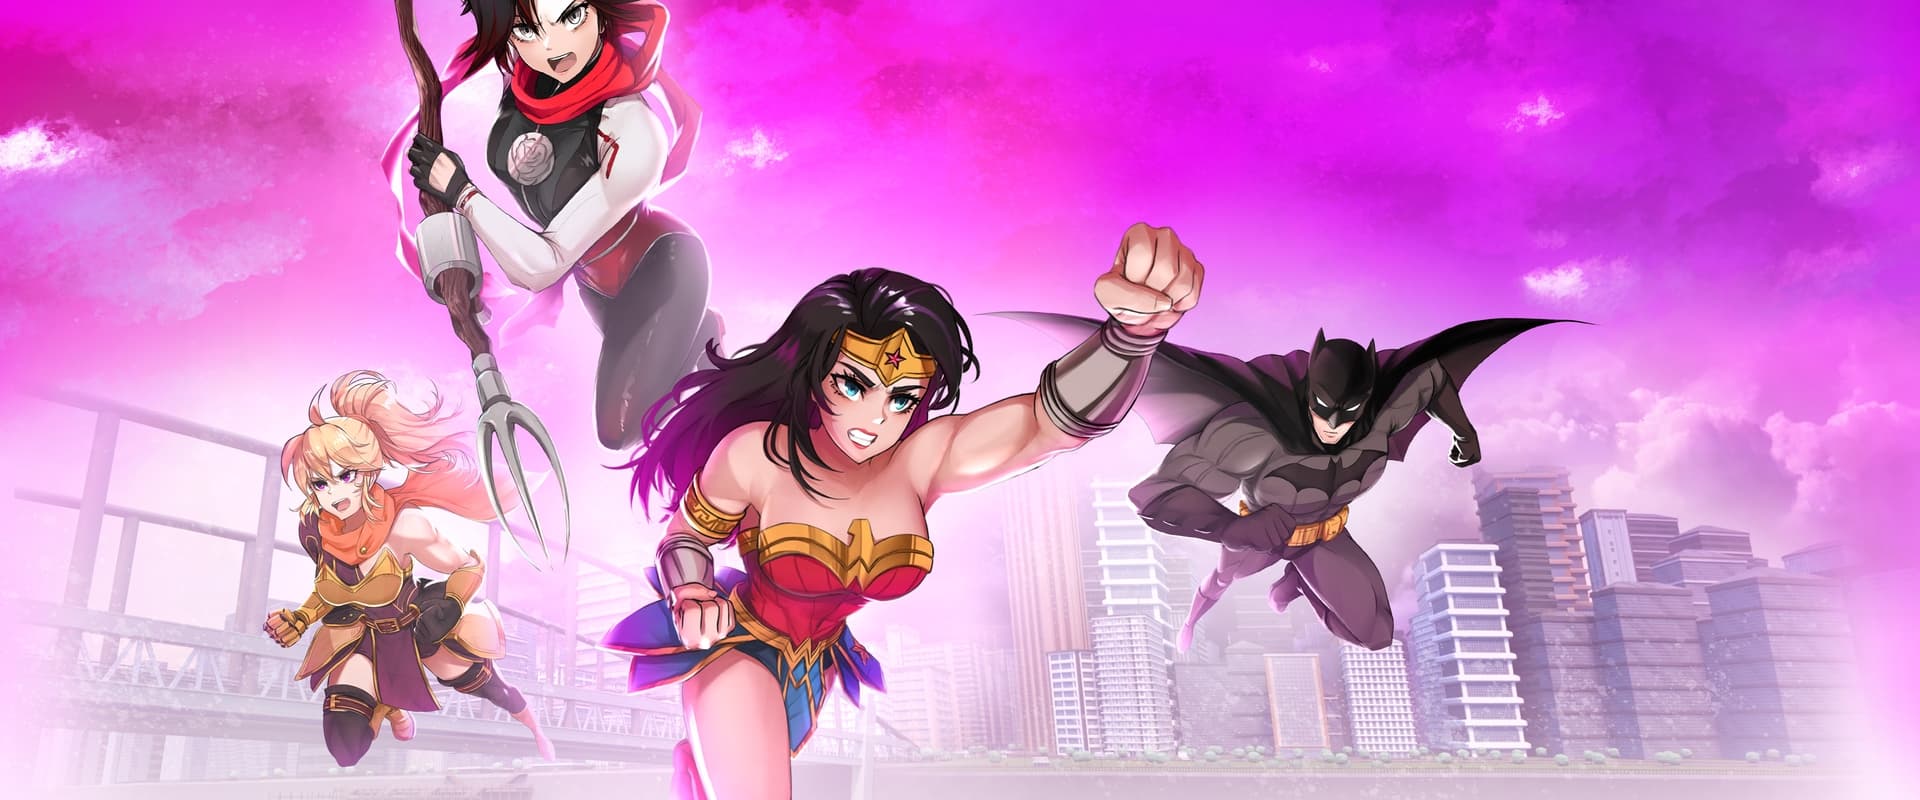 Justice League x RWBY: Super Heroes & Huntsmen, Part Two